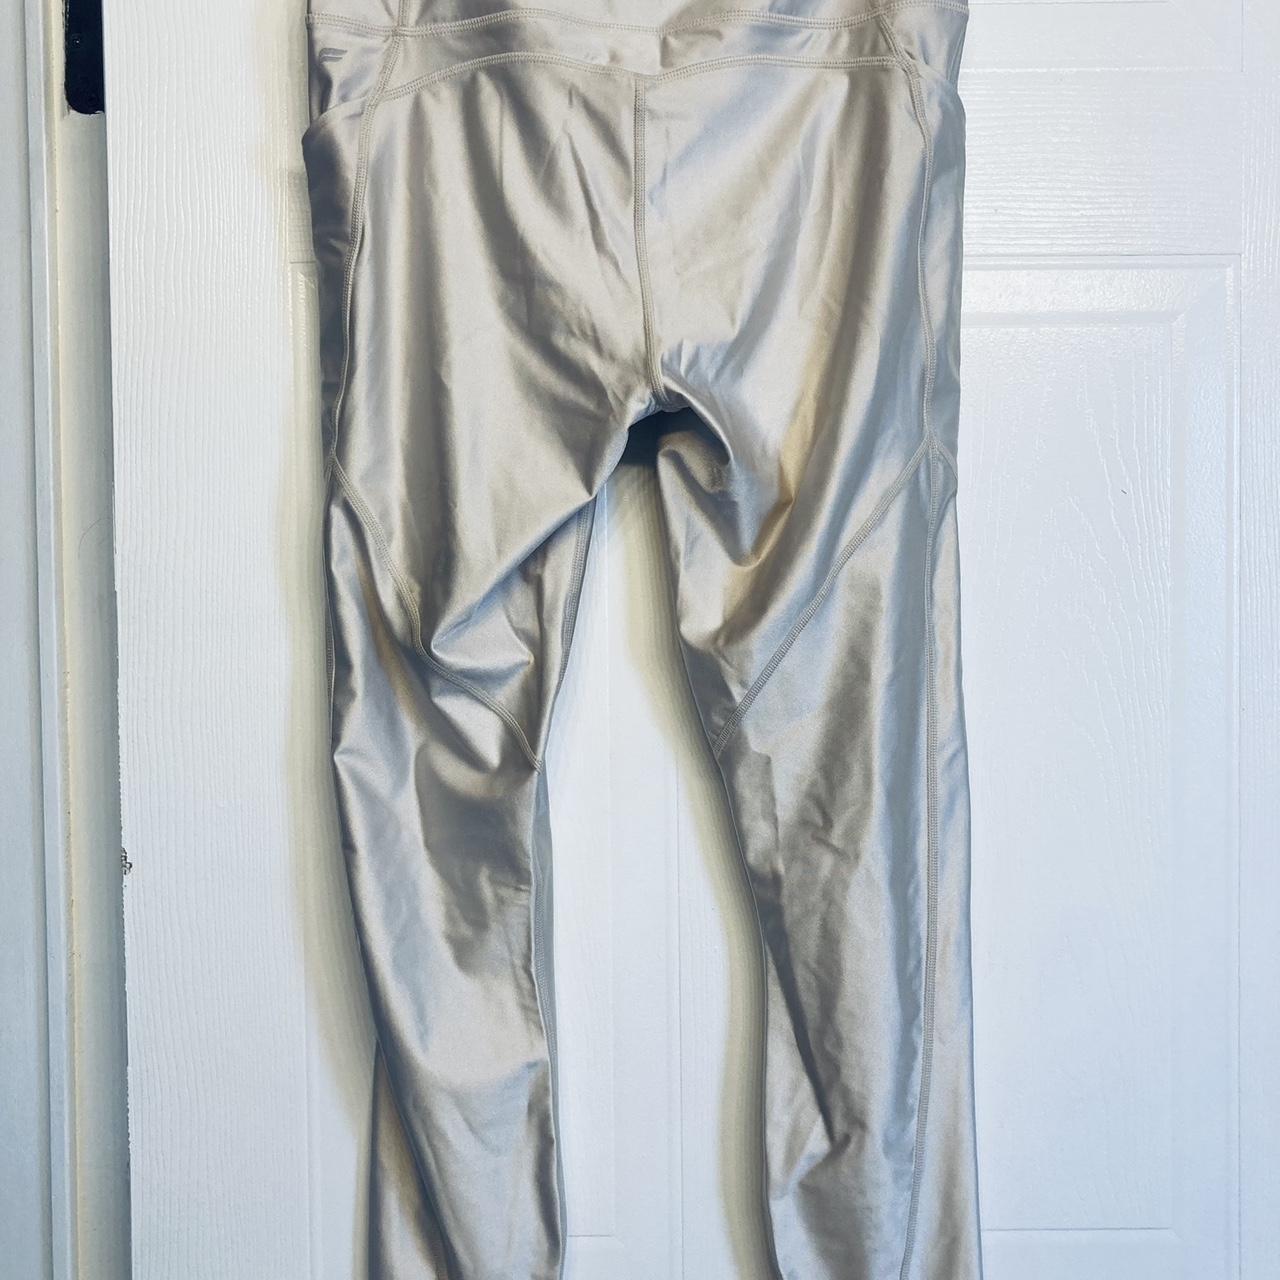 oasis high-waisted fabletics leggings pocket 7/8 - Depop